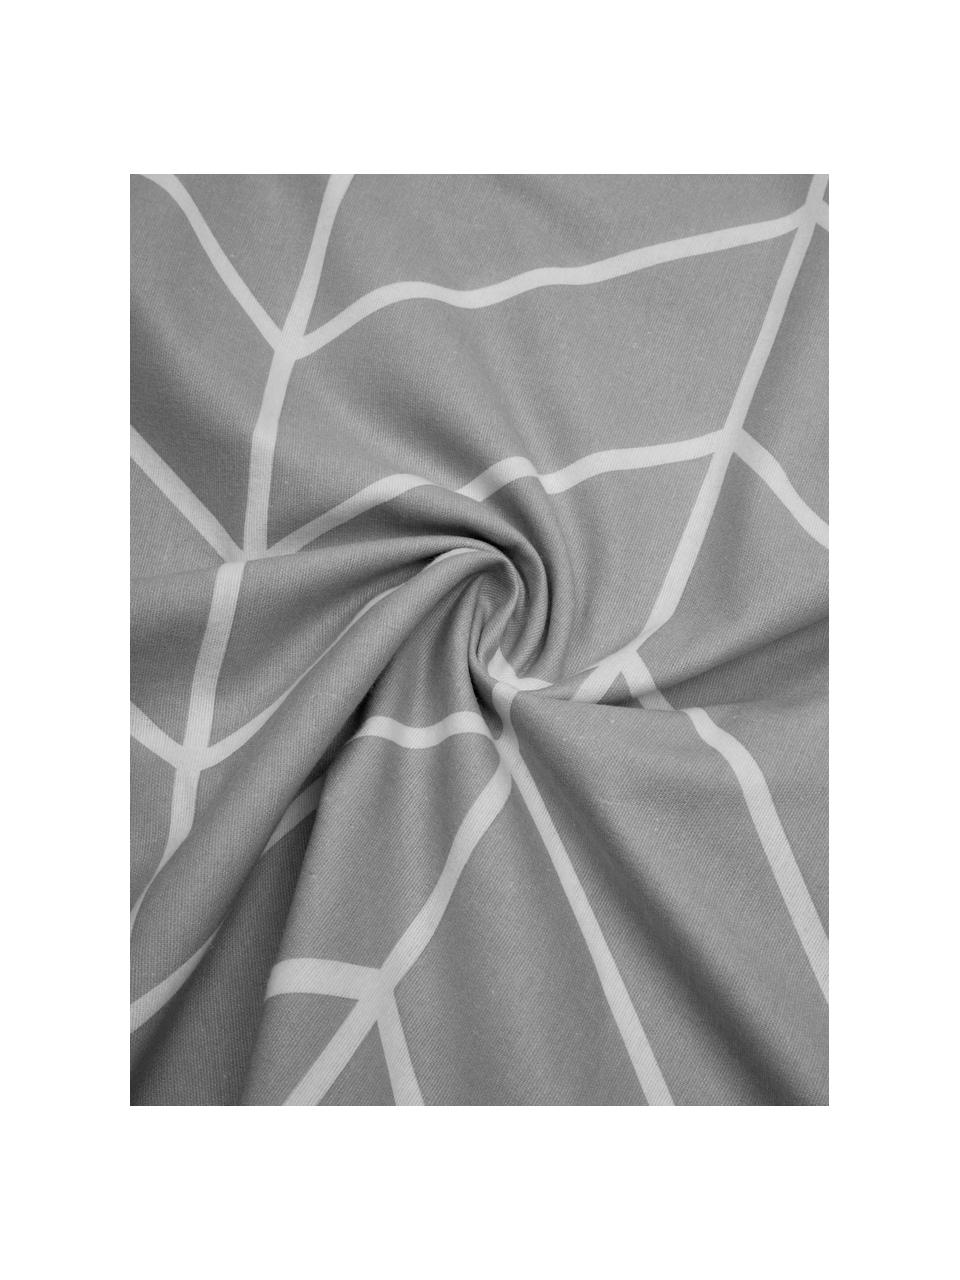 Flanell-Bettwäsche Yule mit grafischem Muster, Webart: Flanell Flanell ist ein k, Grau, Weiss, 135 x 200 cm + 1 Kissen 80 x 80 cm